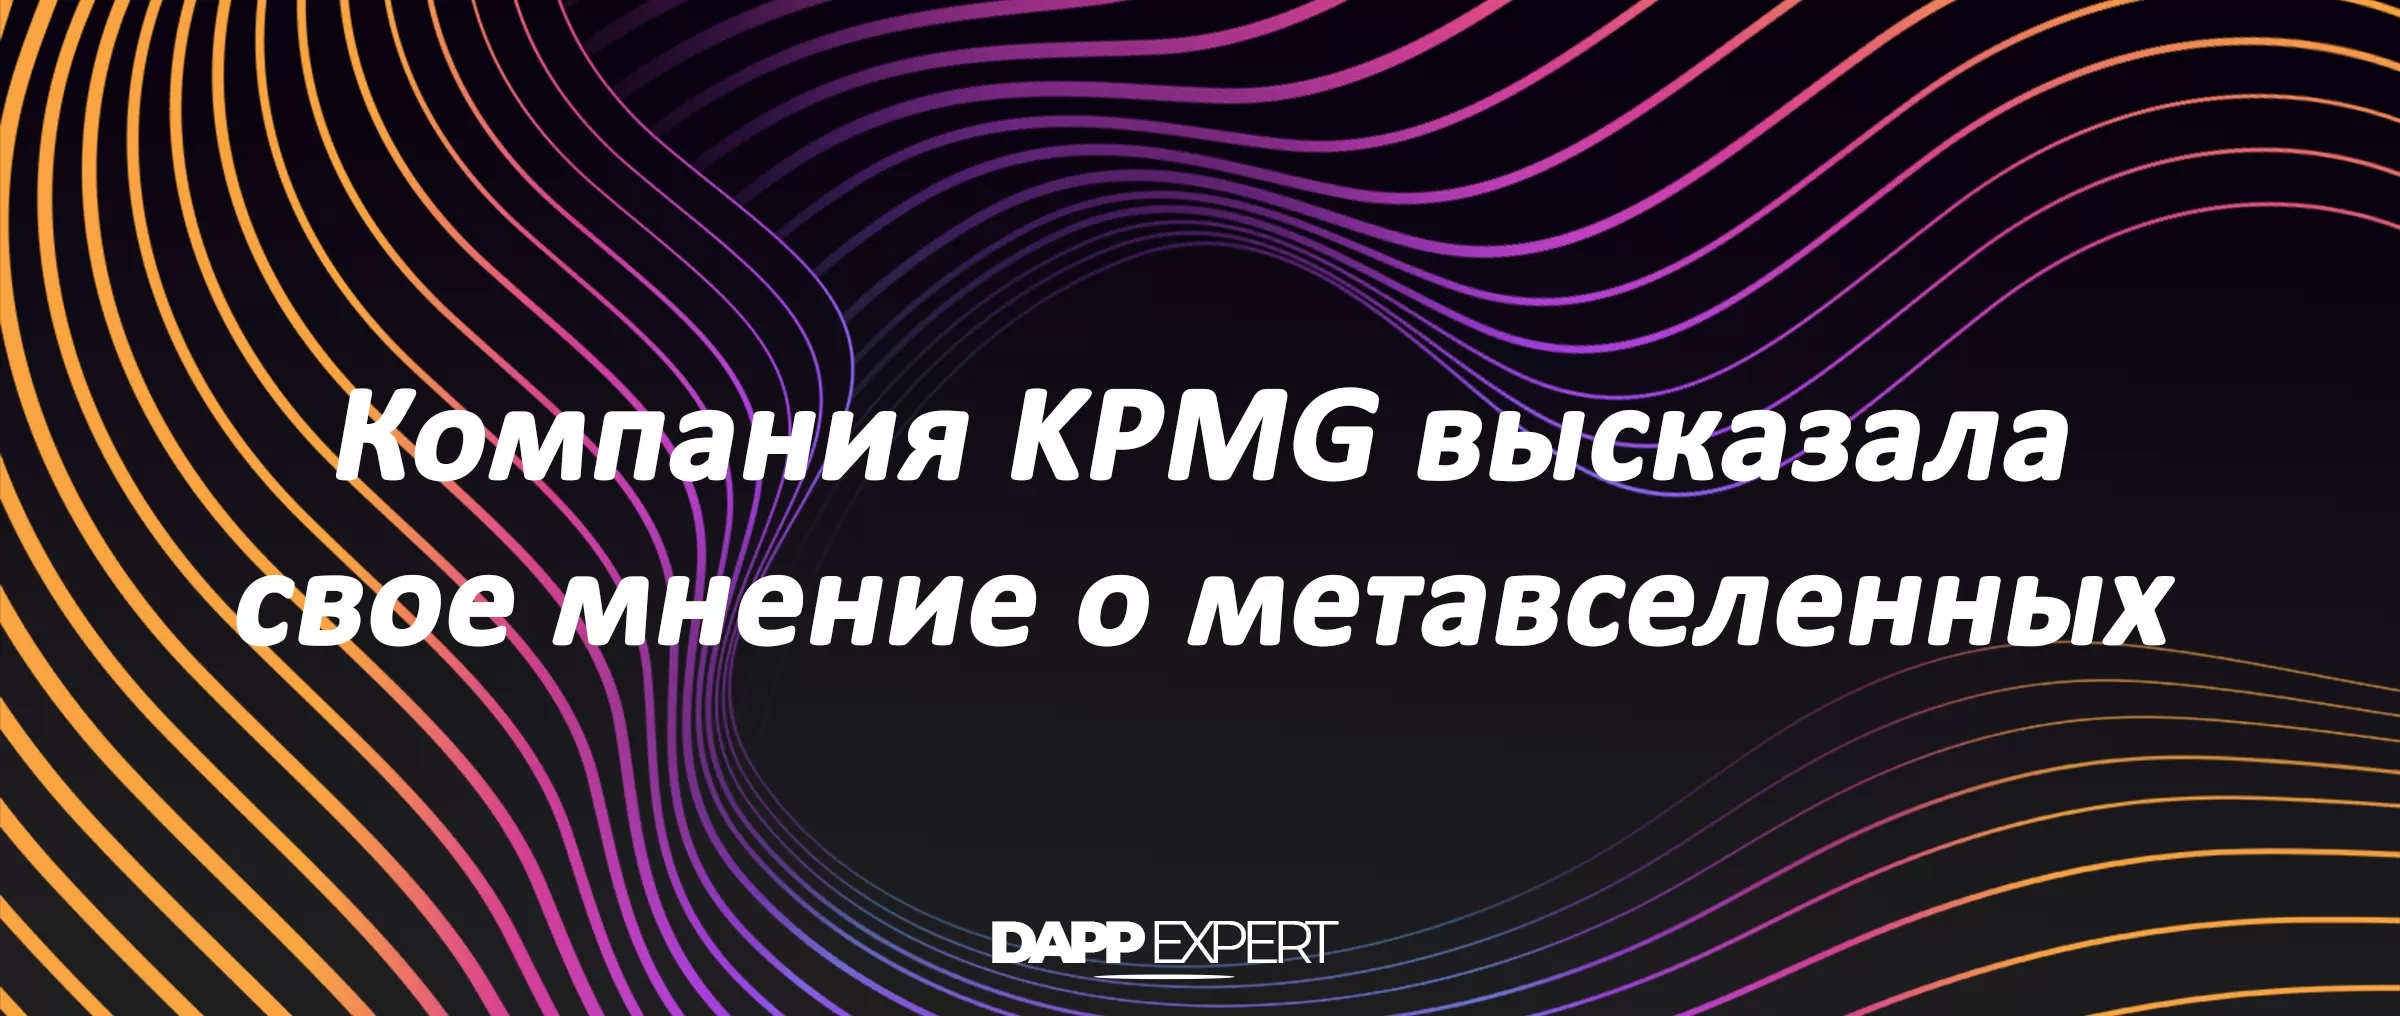 Компания KPMG высказала свое мнение о метавселенных